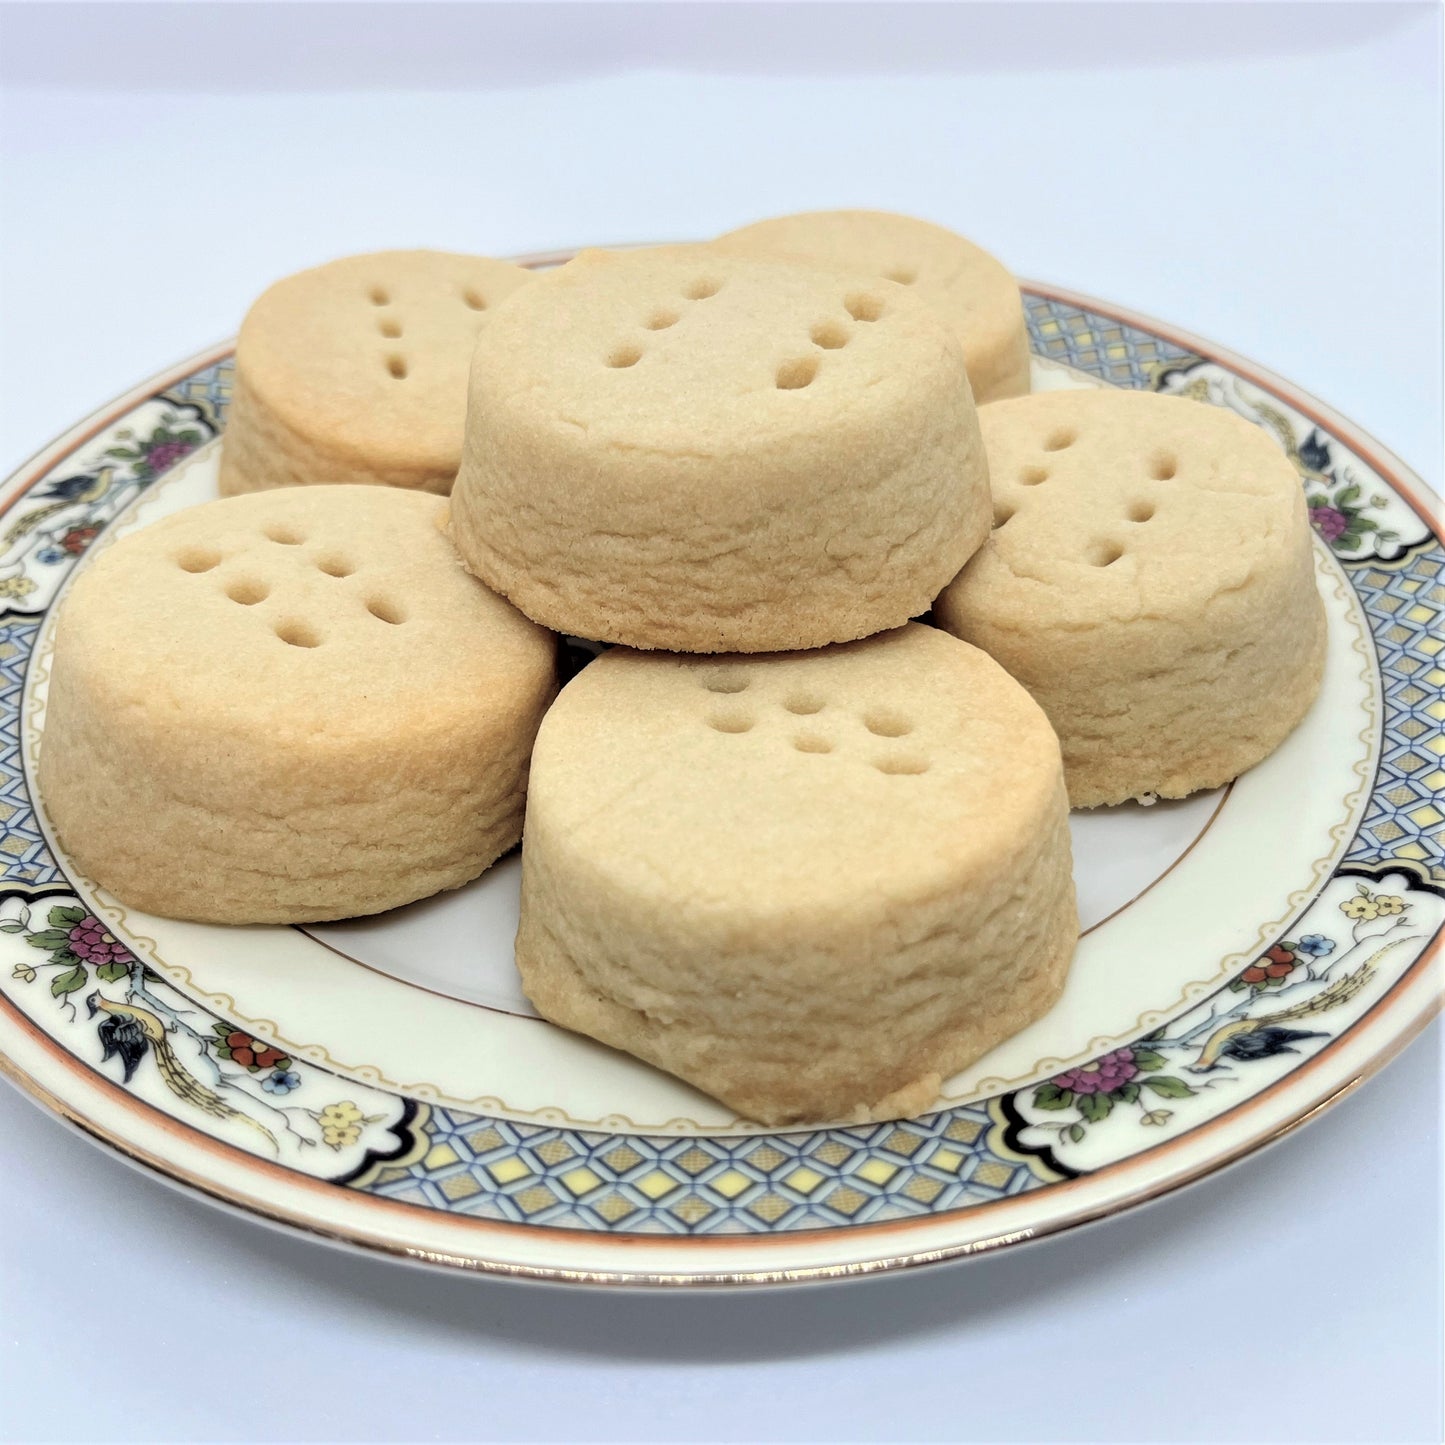 4. Lemon Shortbread Cookies - 12 cookies